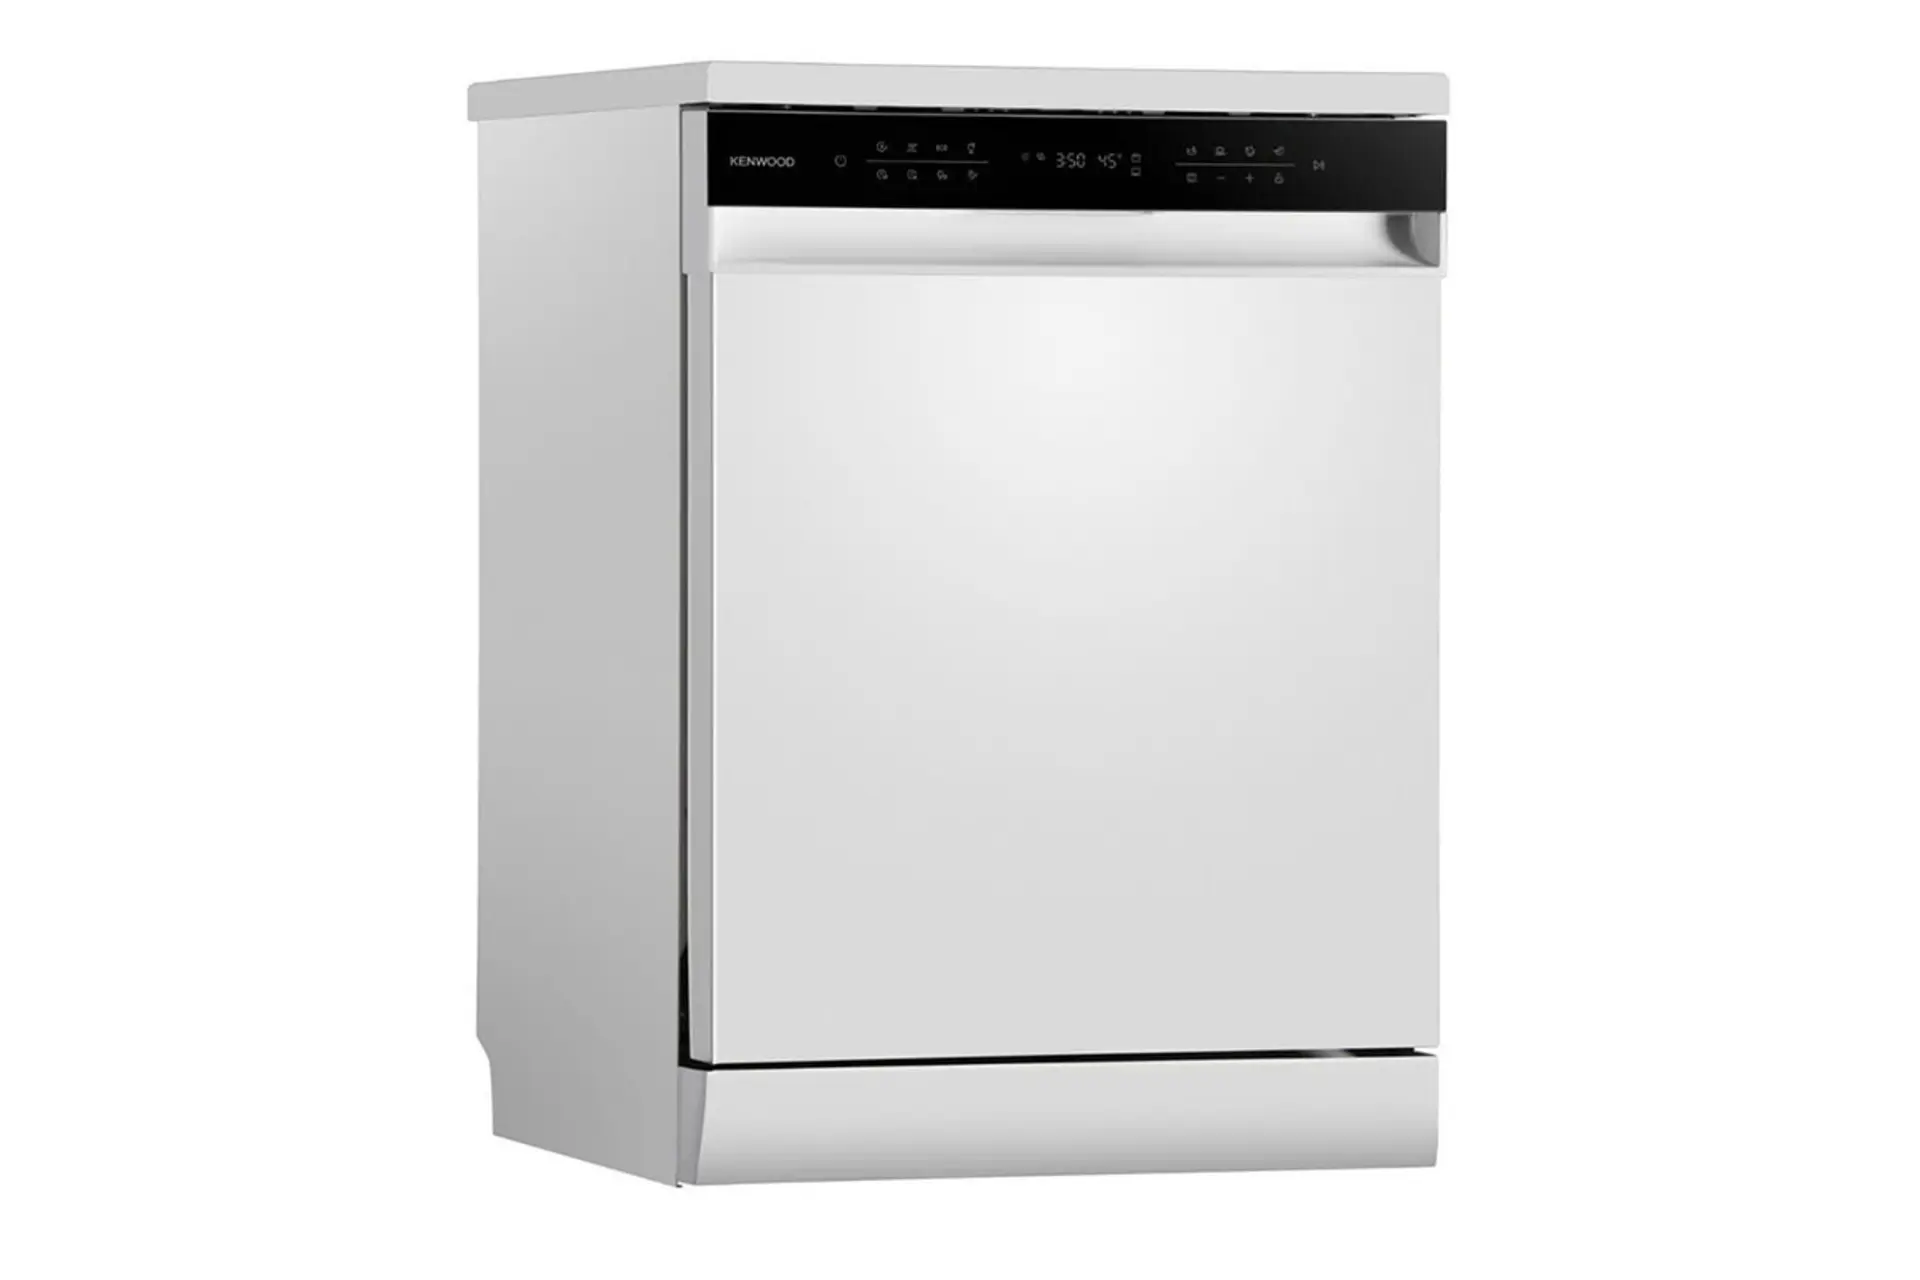 ماشین ظرفشویی کنوود Kenwood KDW-3141 نمای جلو و چپ رنگ سفید